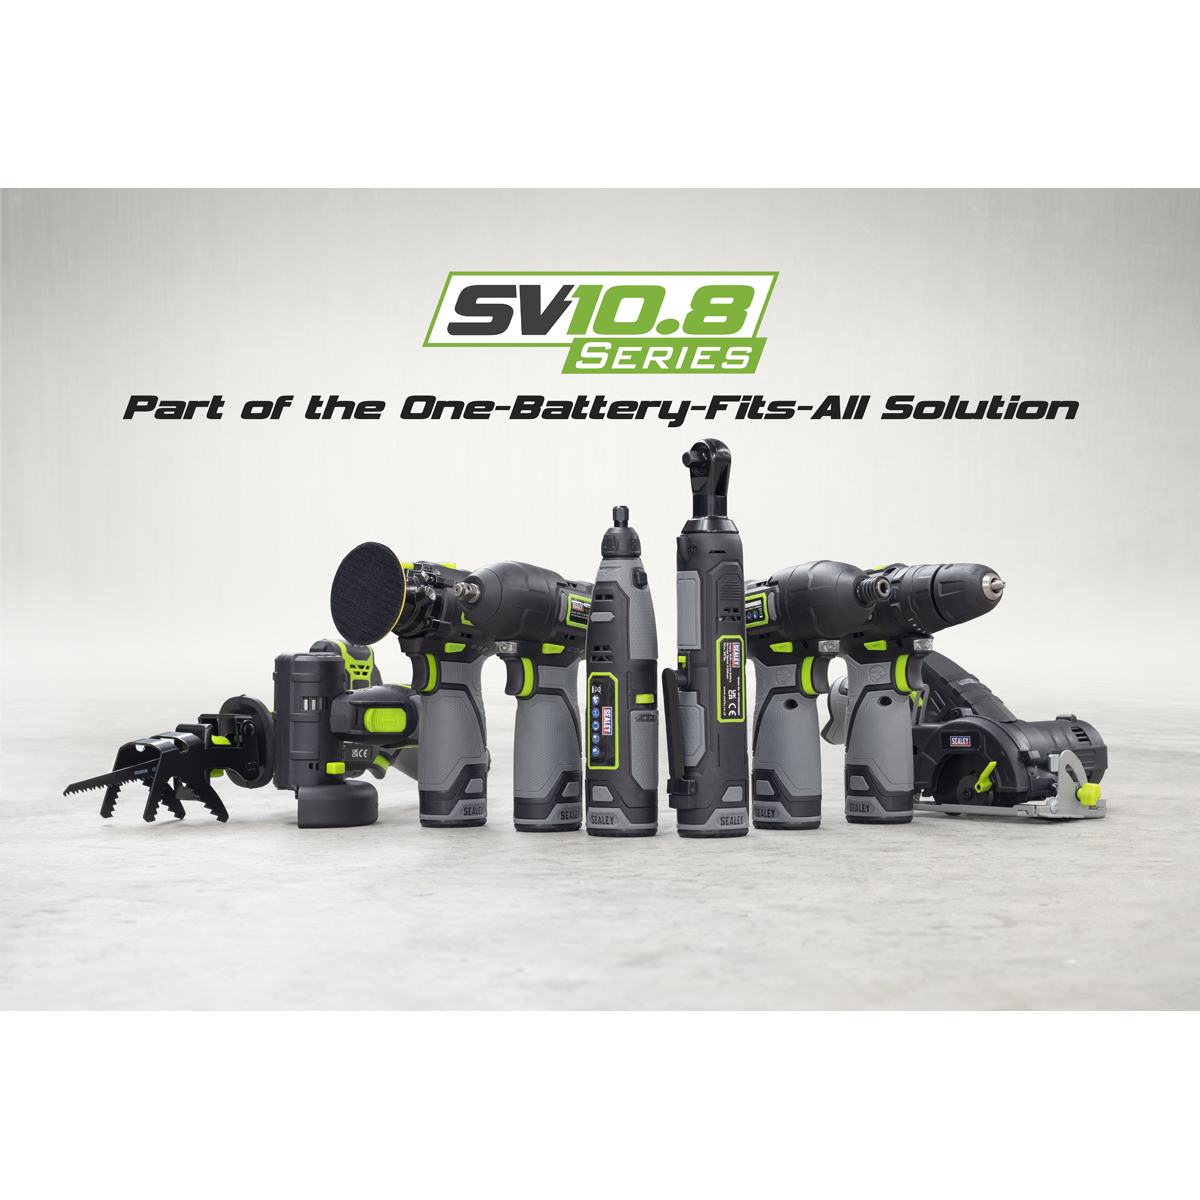 2 x 10.8V SV10.8 Series Combi Drill & Multi-Tool Kit